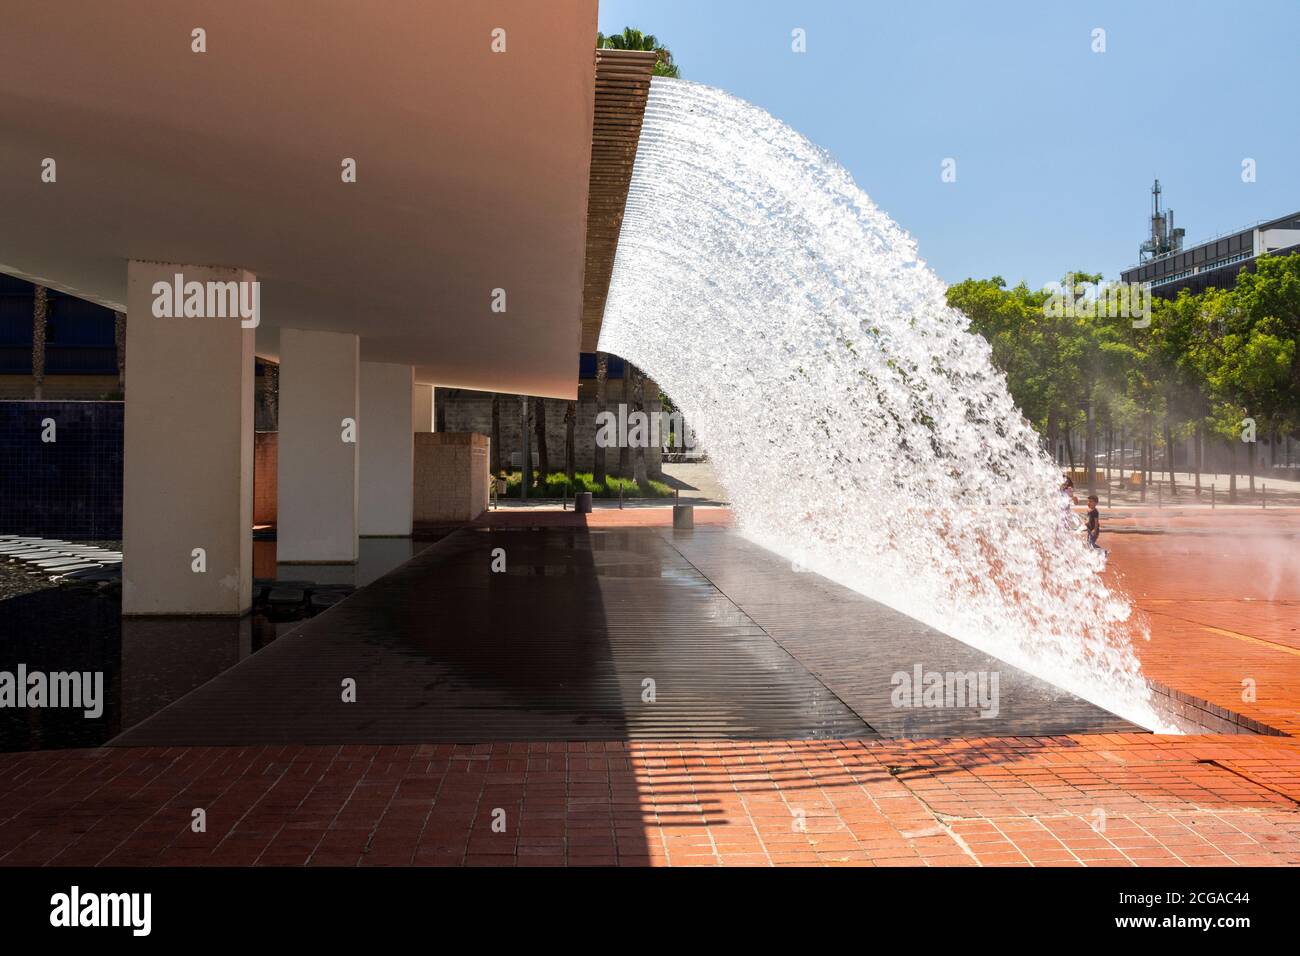 Schöner Blick auf den modernen Springbrunnen im Parque das Nacoes in Lissabon, Portugal Stockfoto